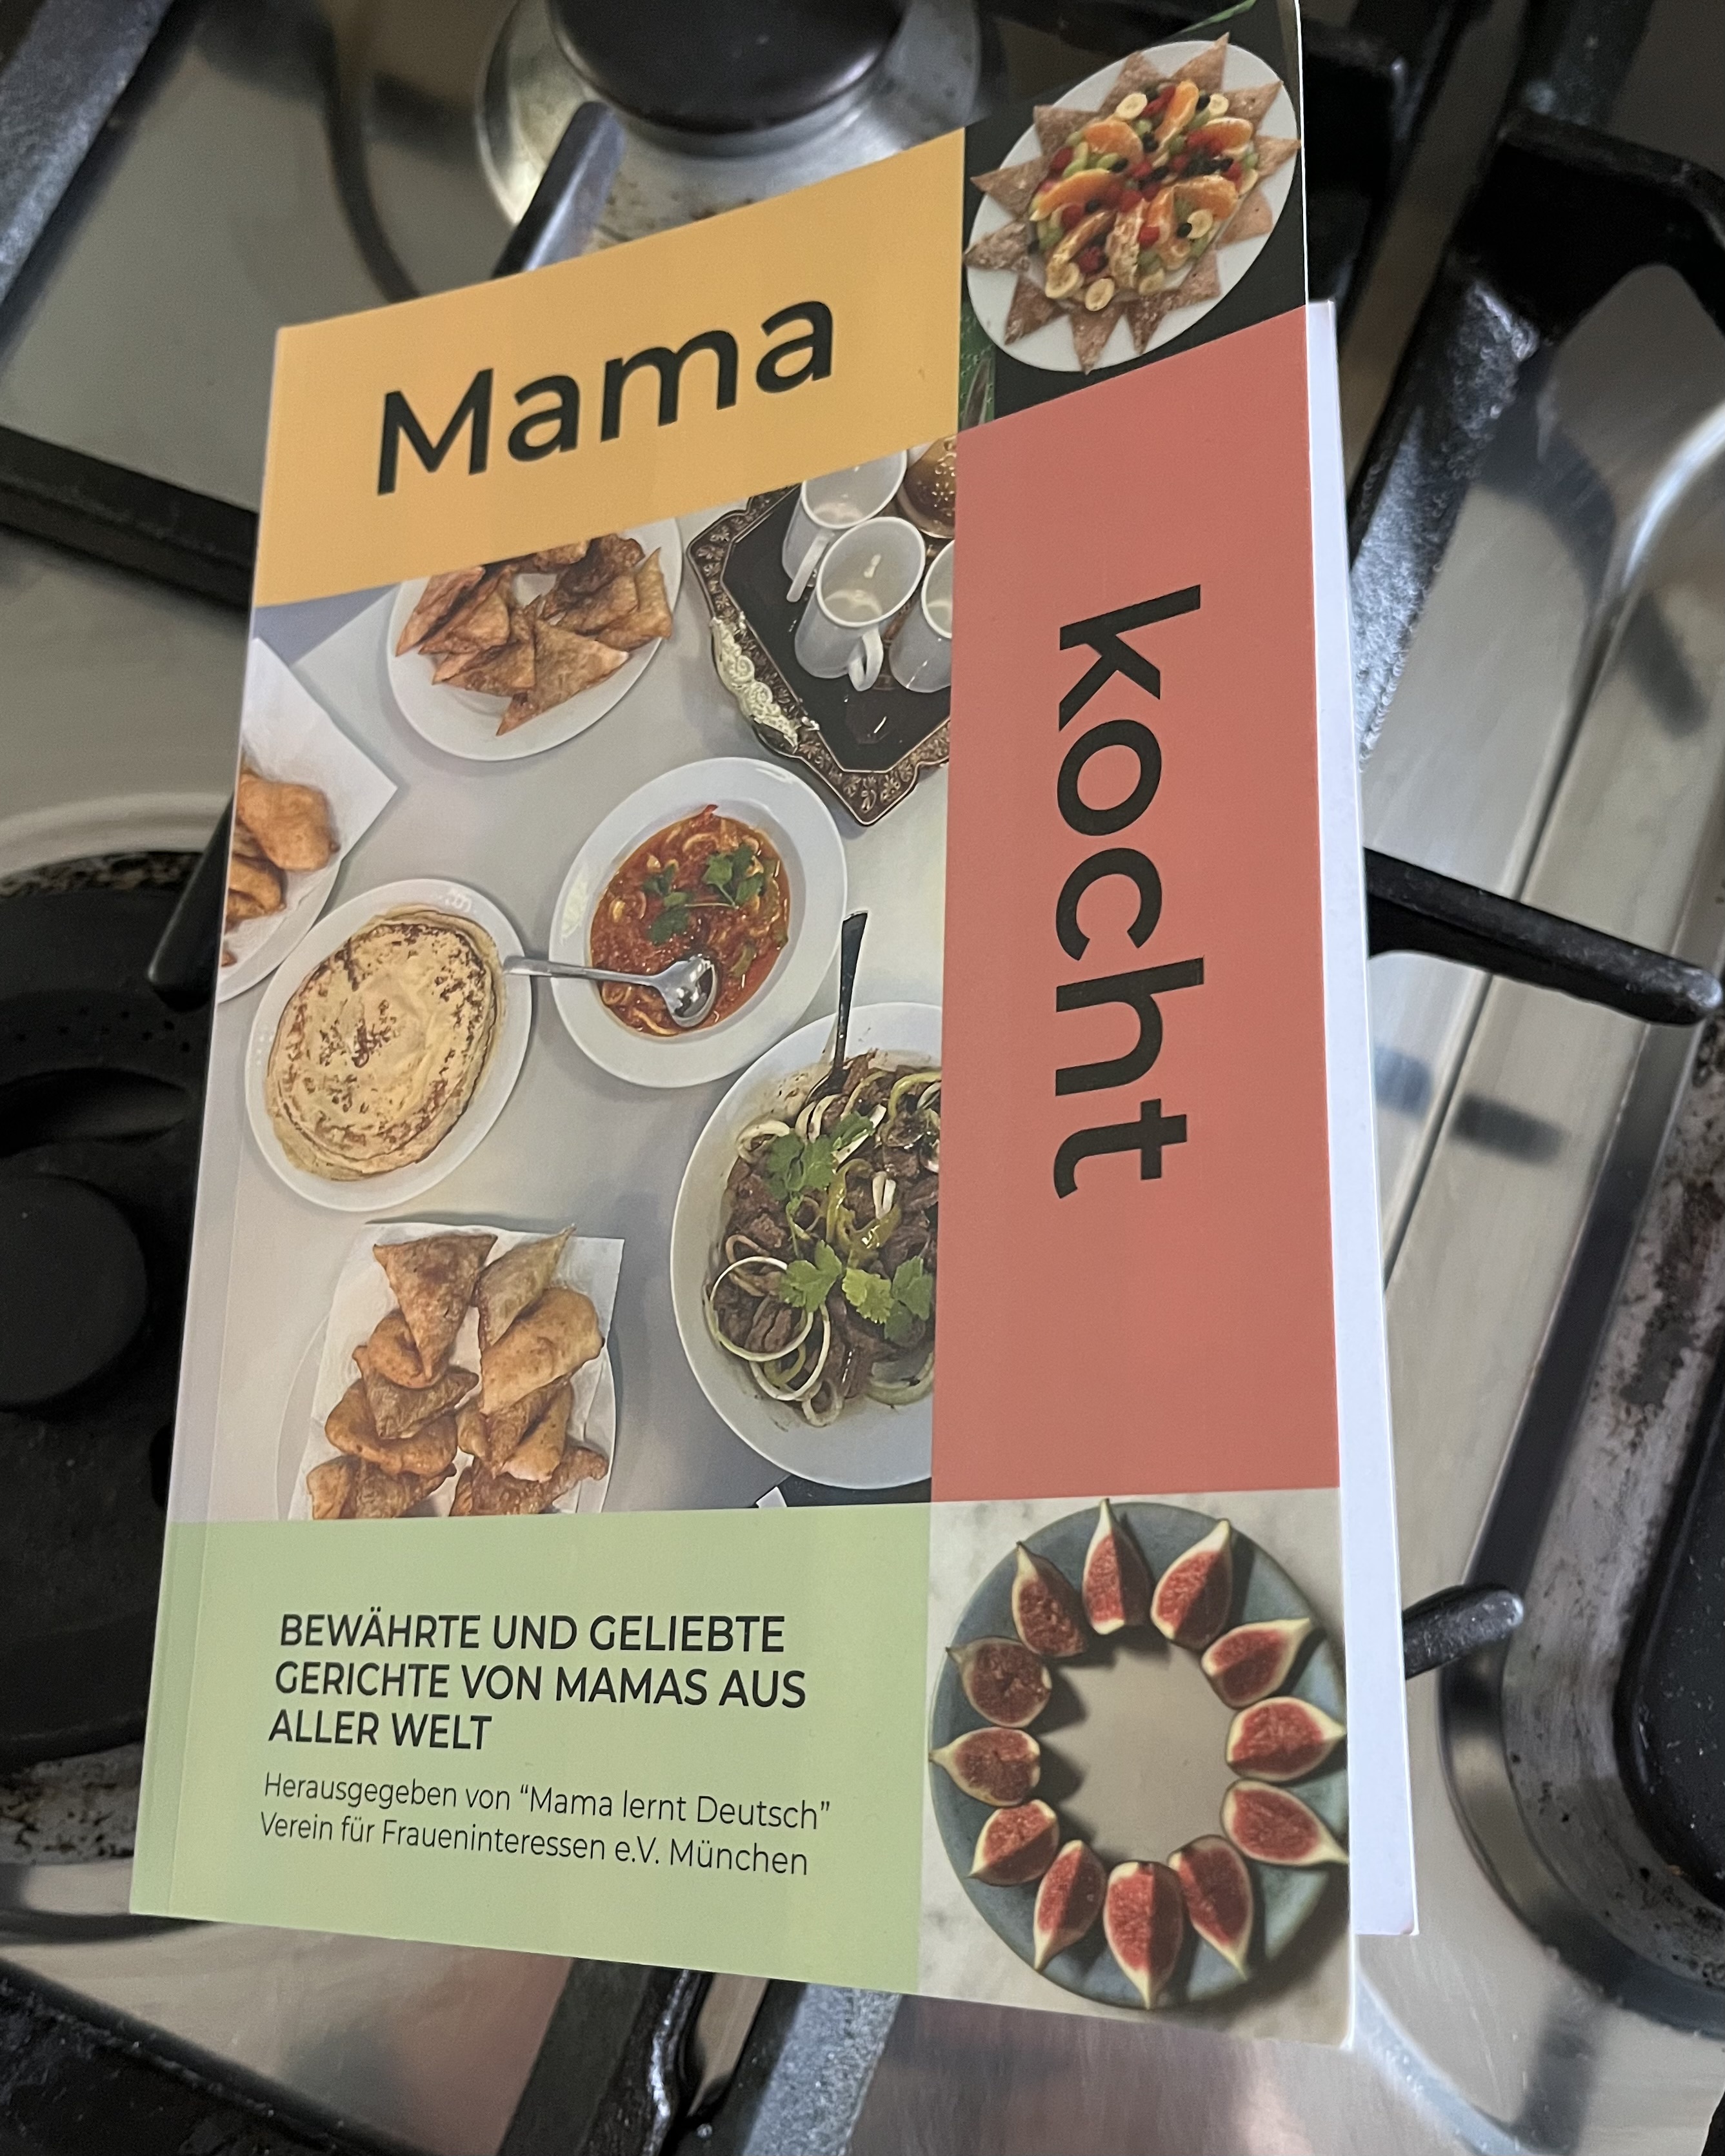 Das gemeinsame Kochbuch mit Rezepten aus aller Welt gibt es auch auf der Ehrenamtsmesse.